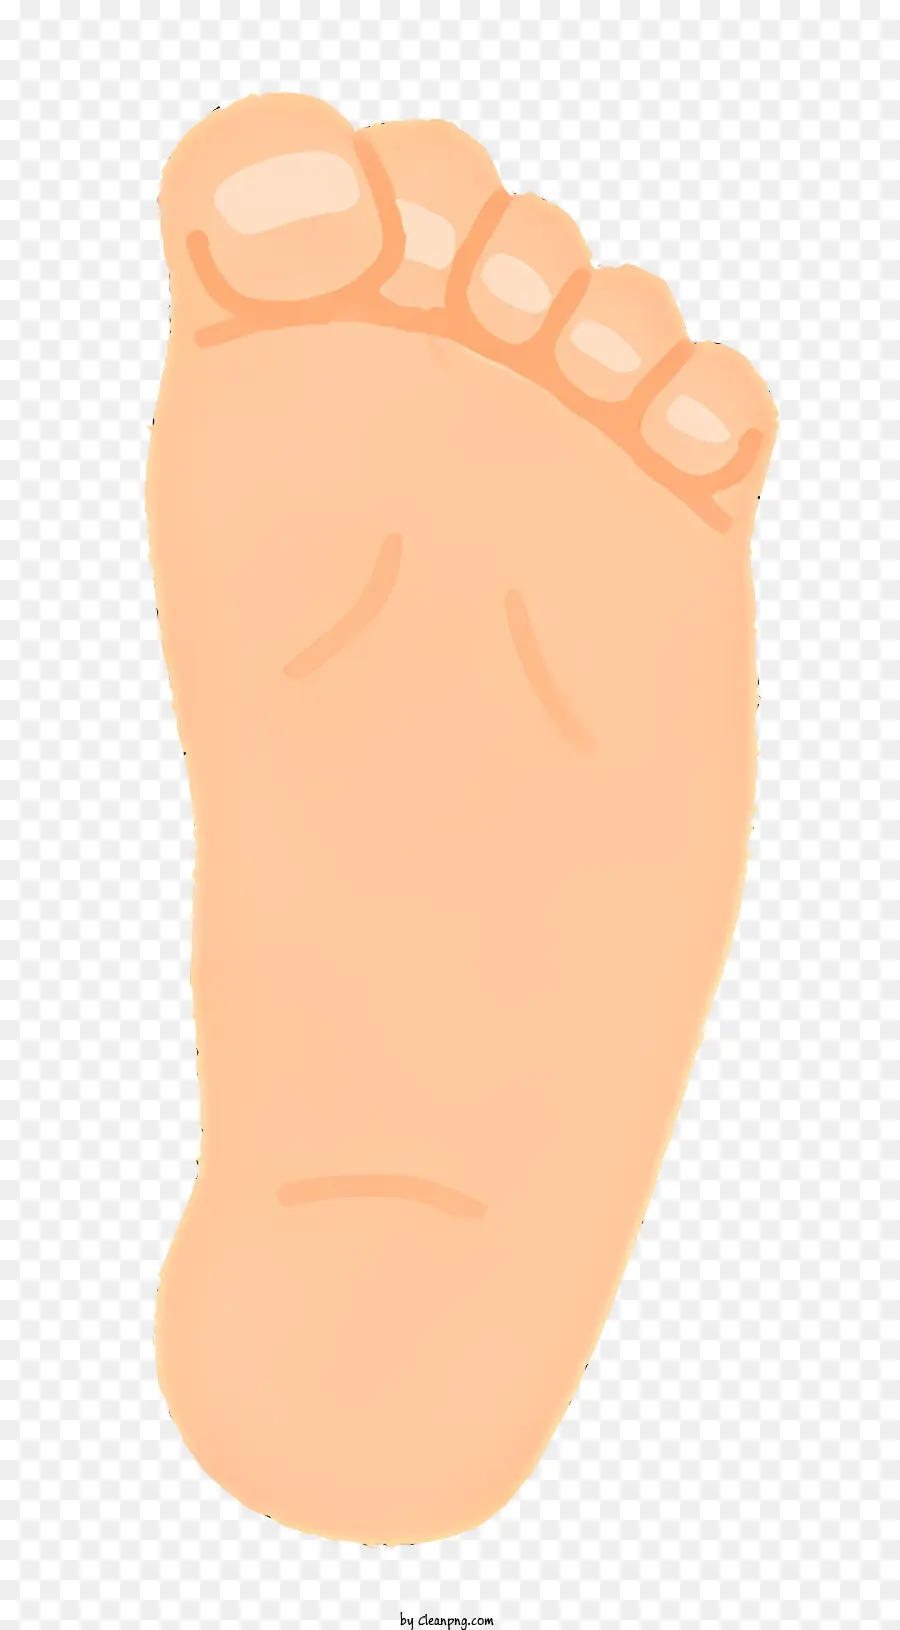 Fußzehen des Gesundheits Kleinkind nach oben kahl - Orangefarbenes Bild des nackten Fußes des Kleinkindes